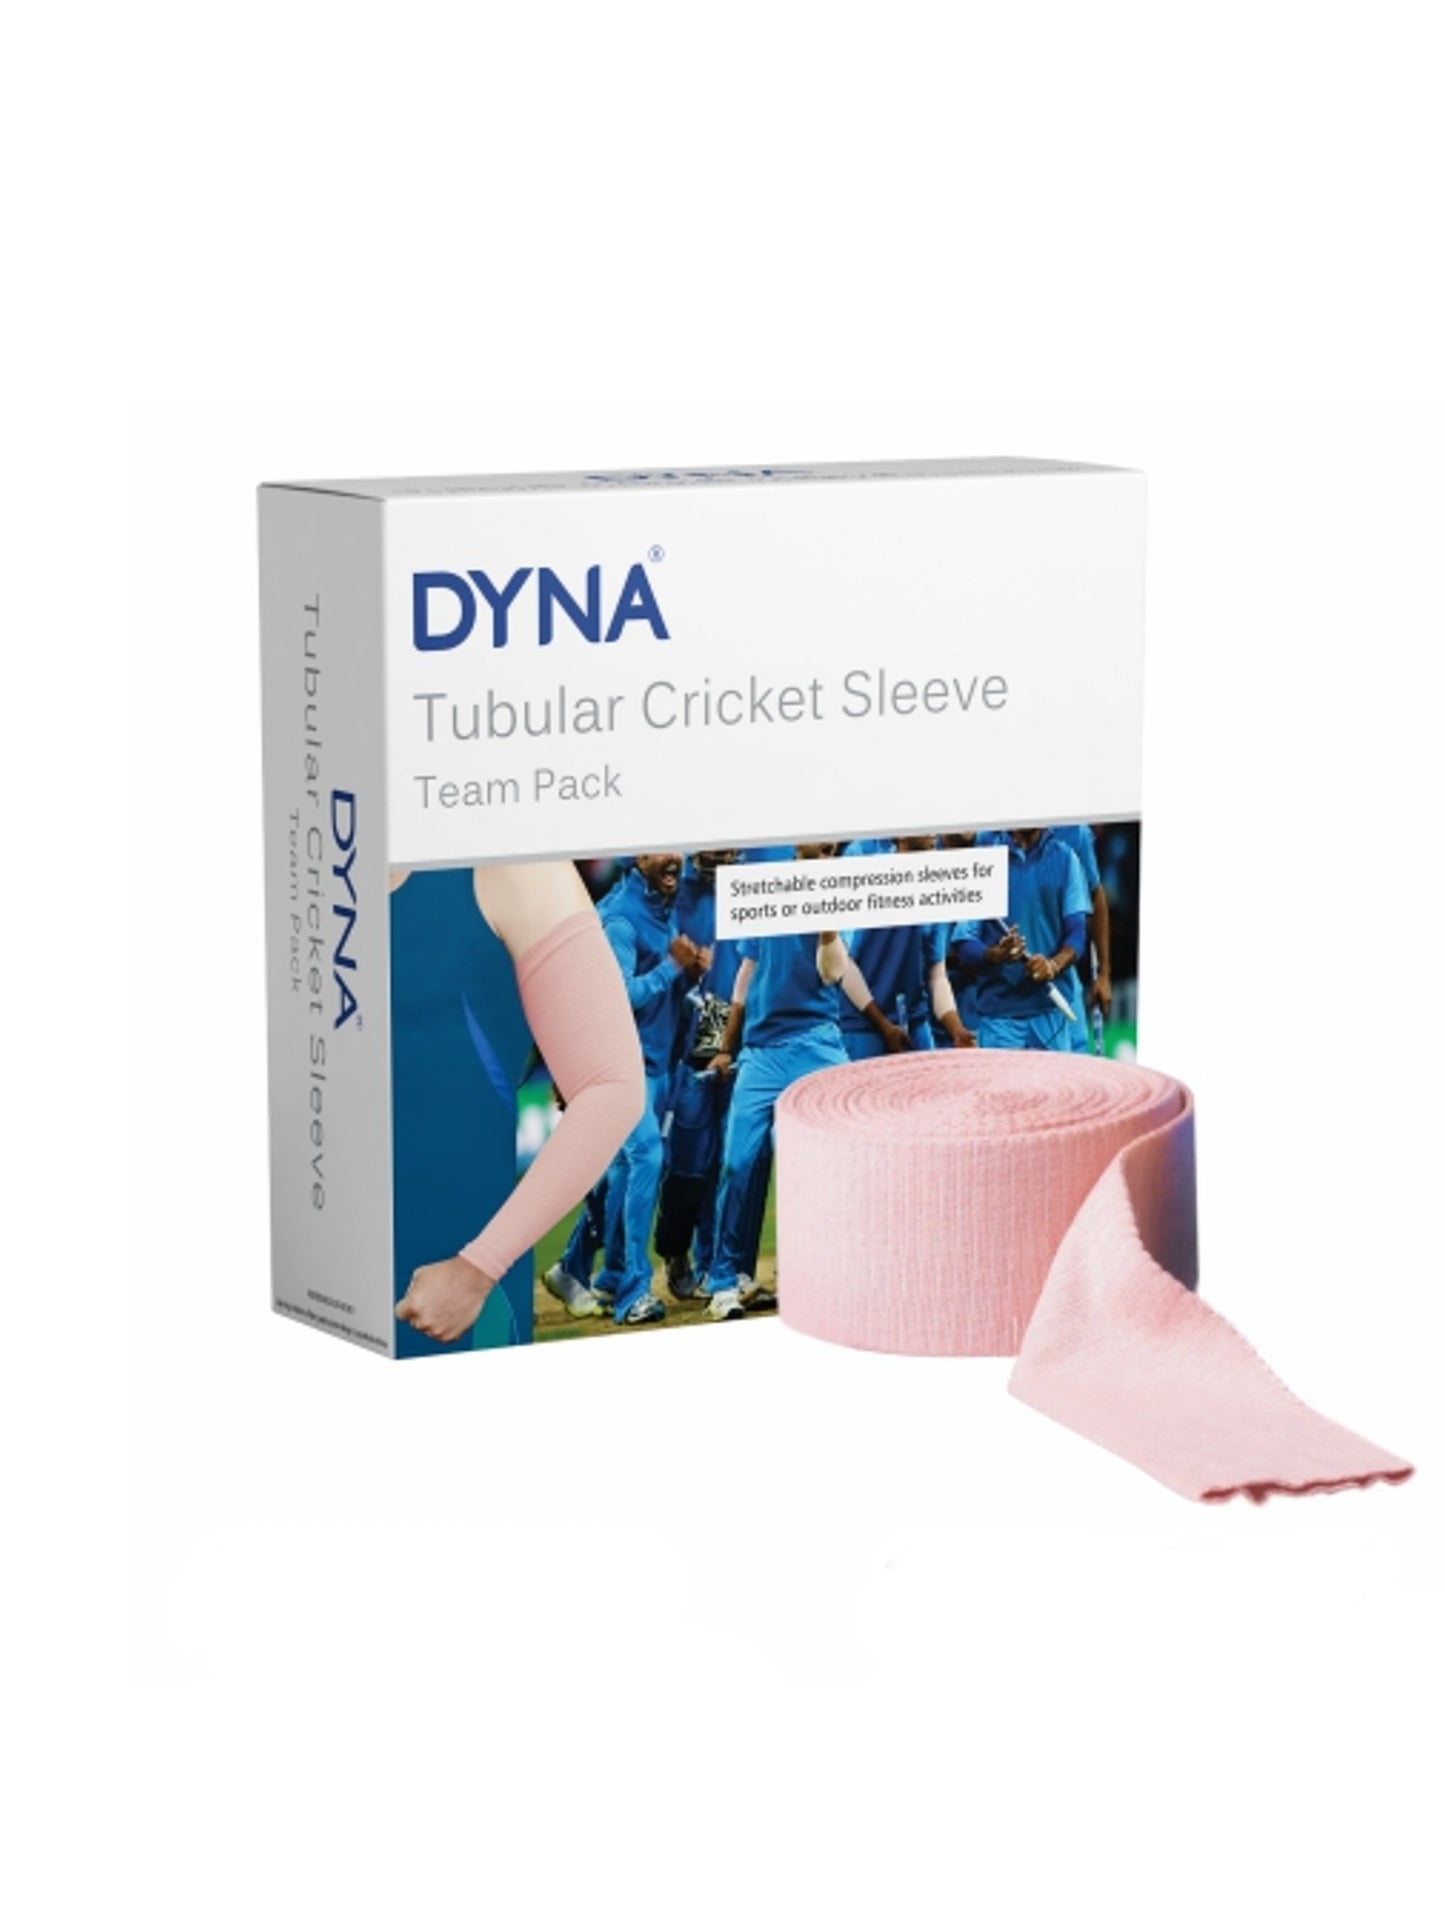 DYNA Tubular Cricket Sleeve